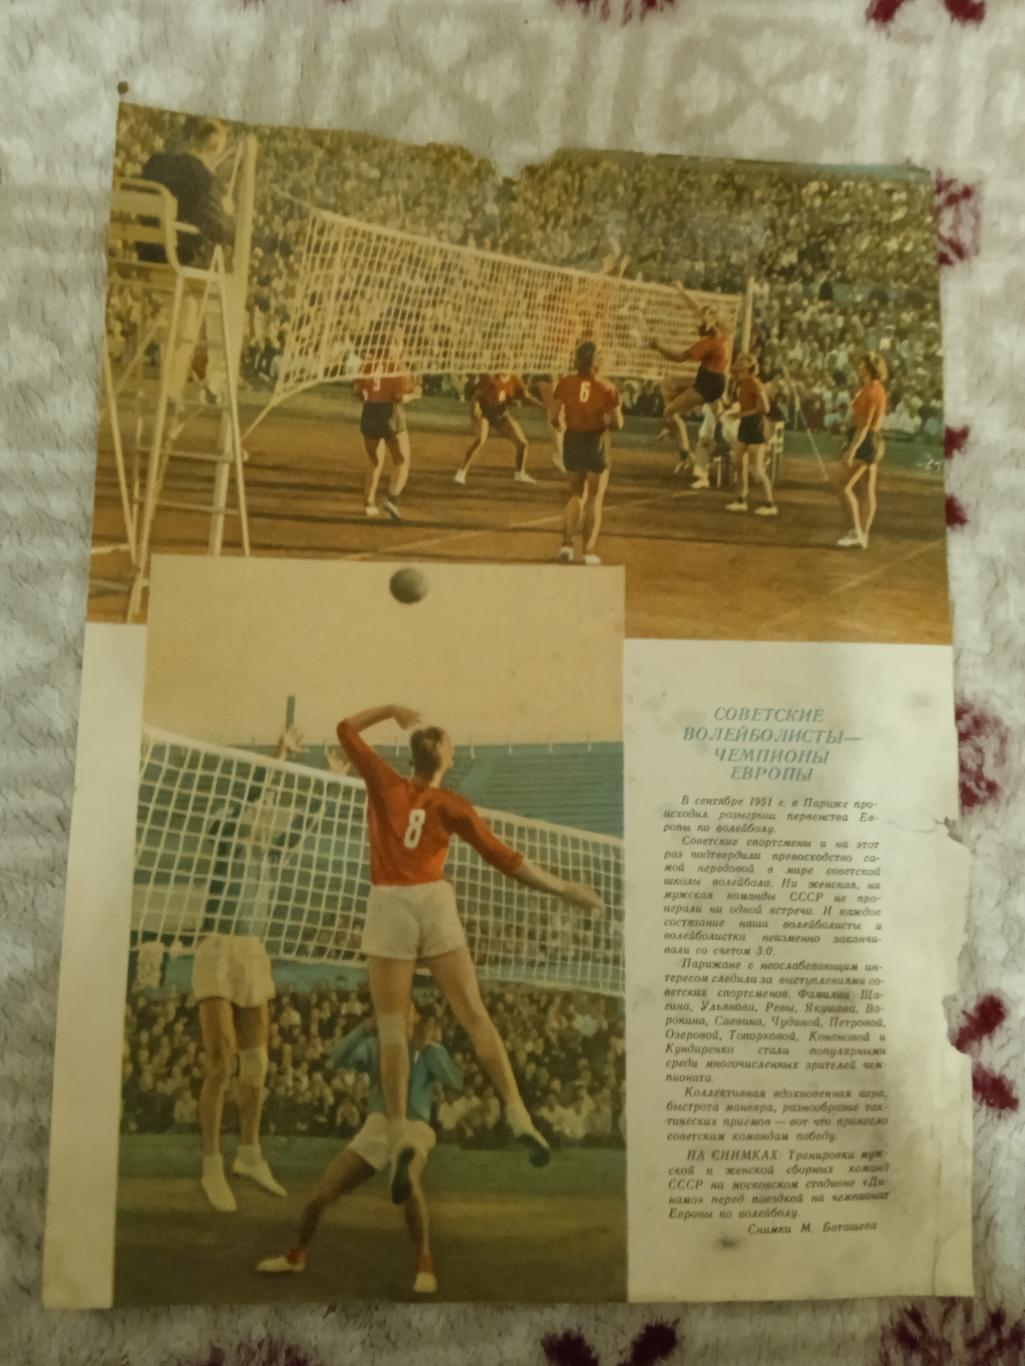 Постер.Волейбол.СССР - чемпионы Европы.Журнал ФиС 1951 г.